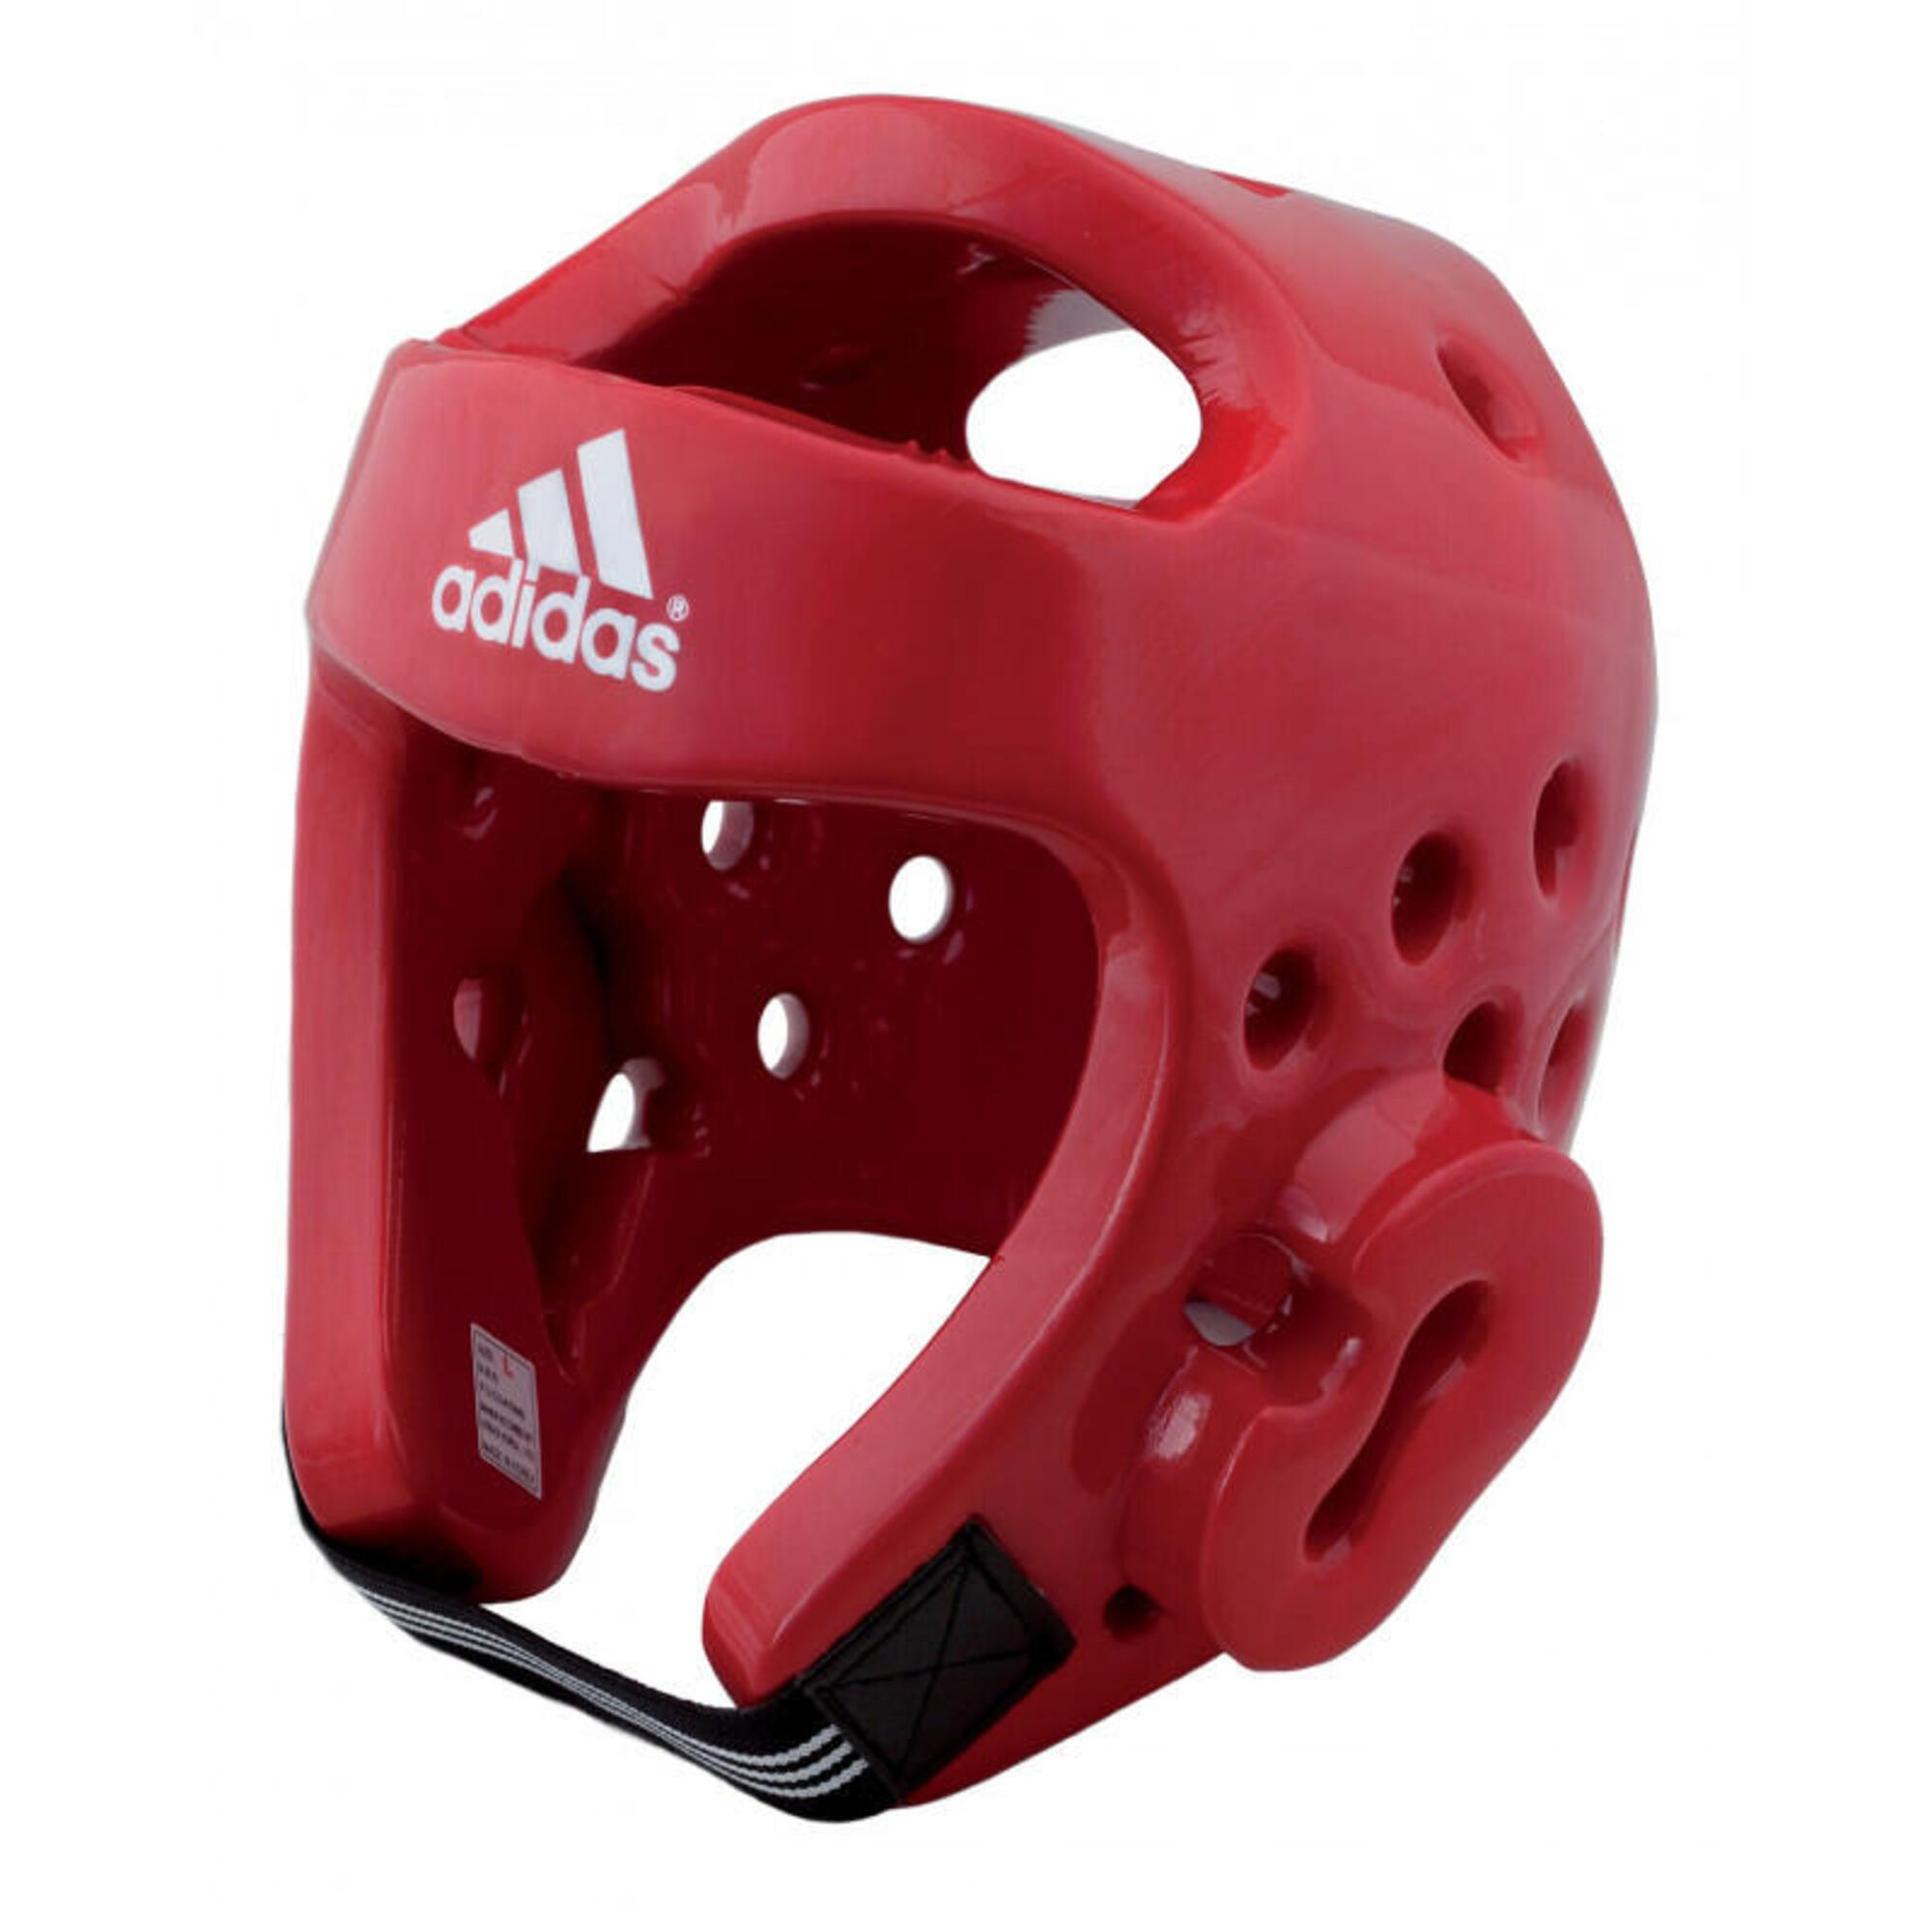 Adidas Helm für Taekwondo